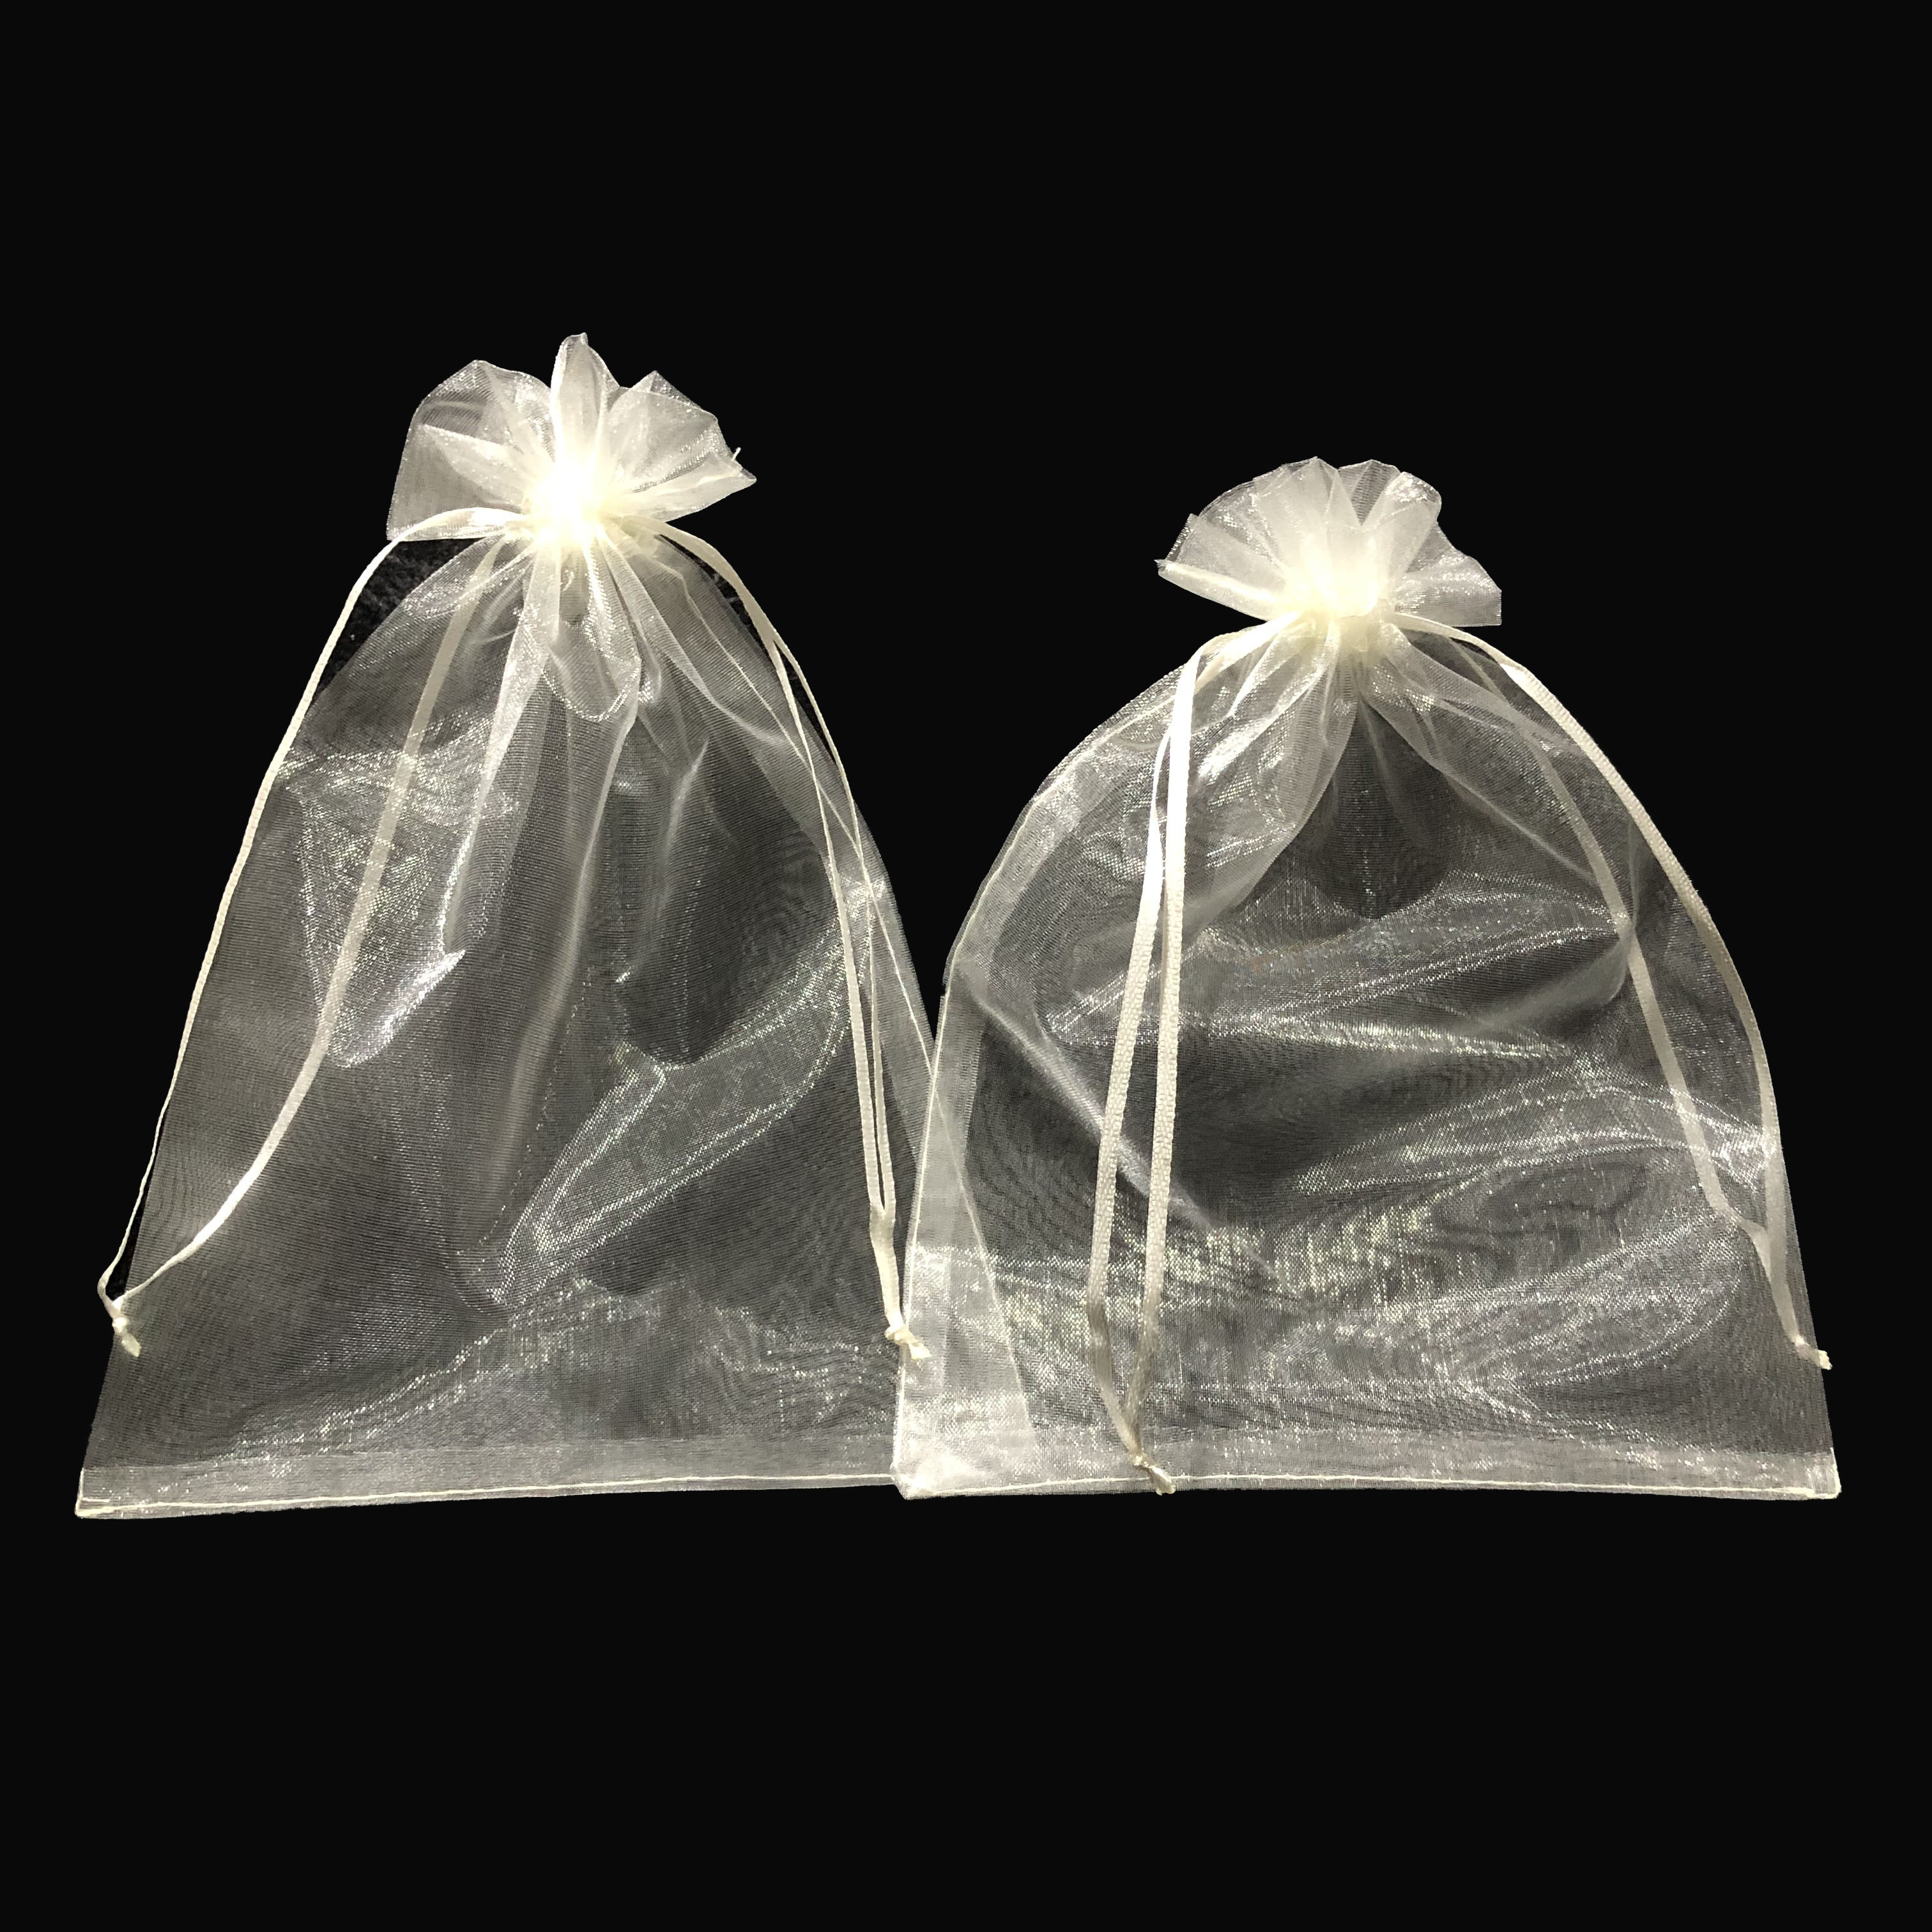 ถุงผ้าแก้ว 9 x 12 CM แพ็ค(50ใบ) ) gauze bag ถุงผ้า ถุงผ้าไหมแก้ว ถุงใส่ของขวัญ ถุงผ้าหูรูด ถุงใส่ของชำร่วย พร้อมส่ง